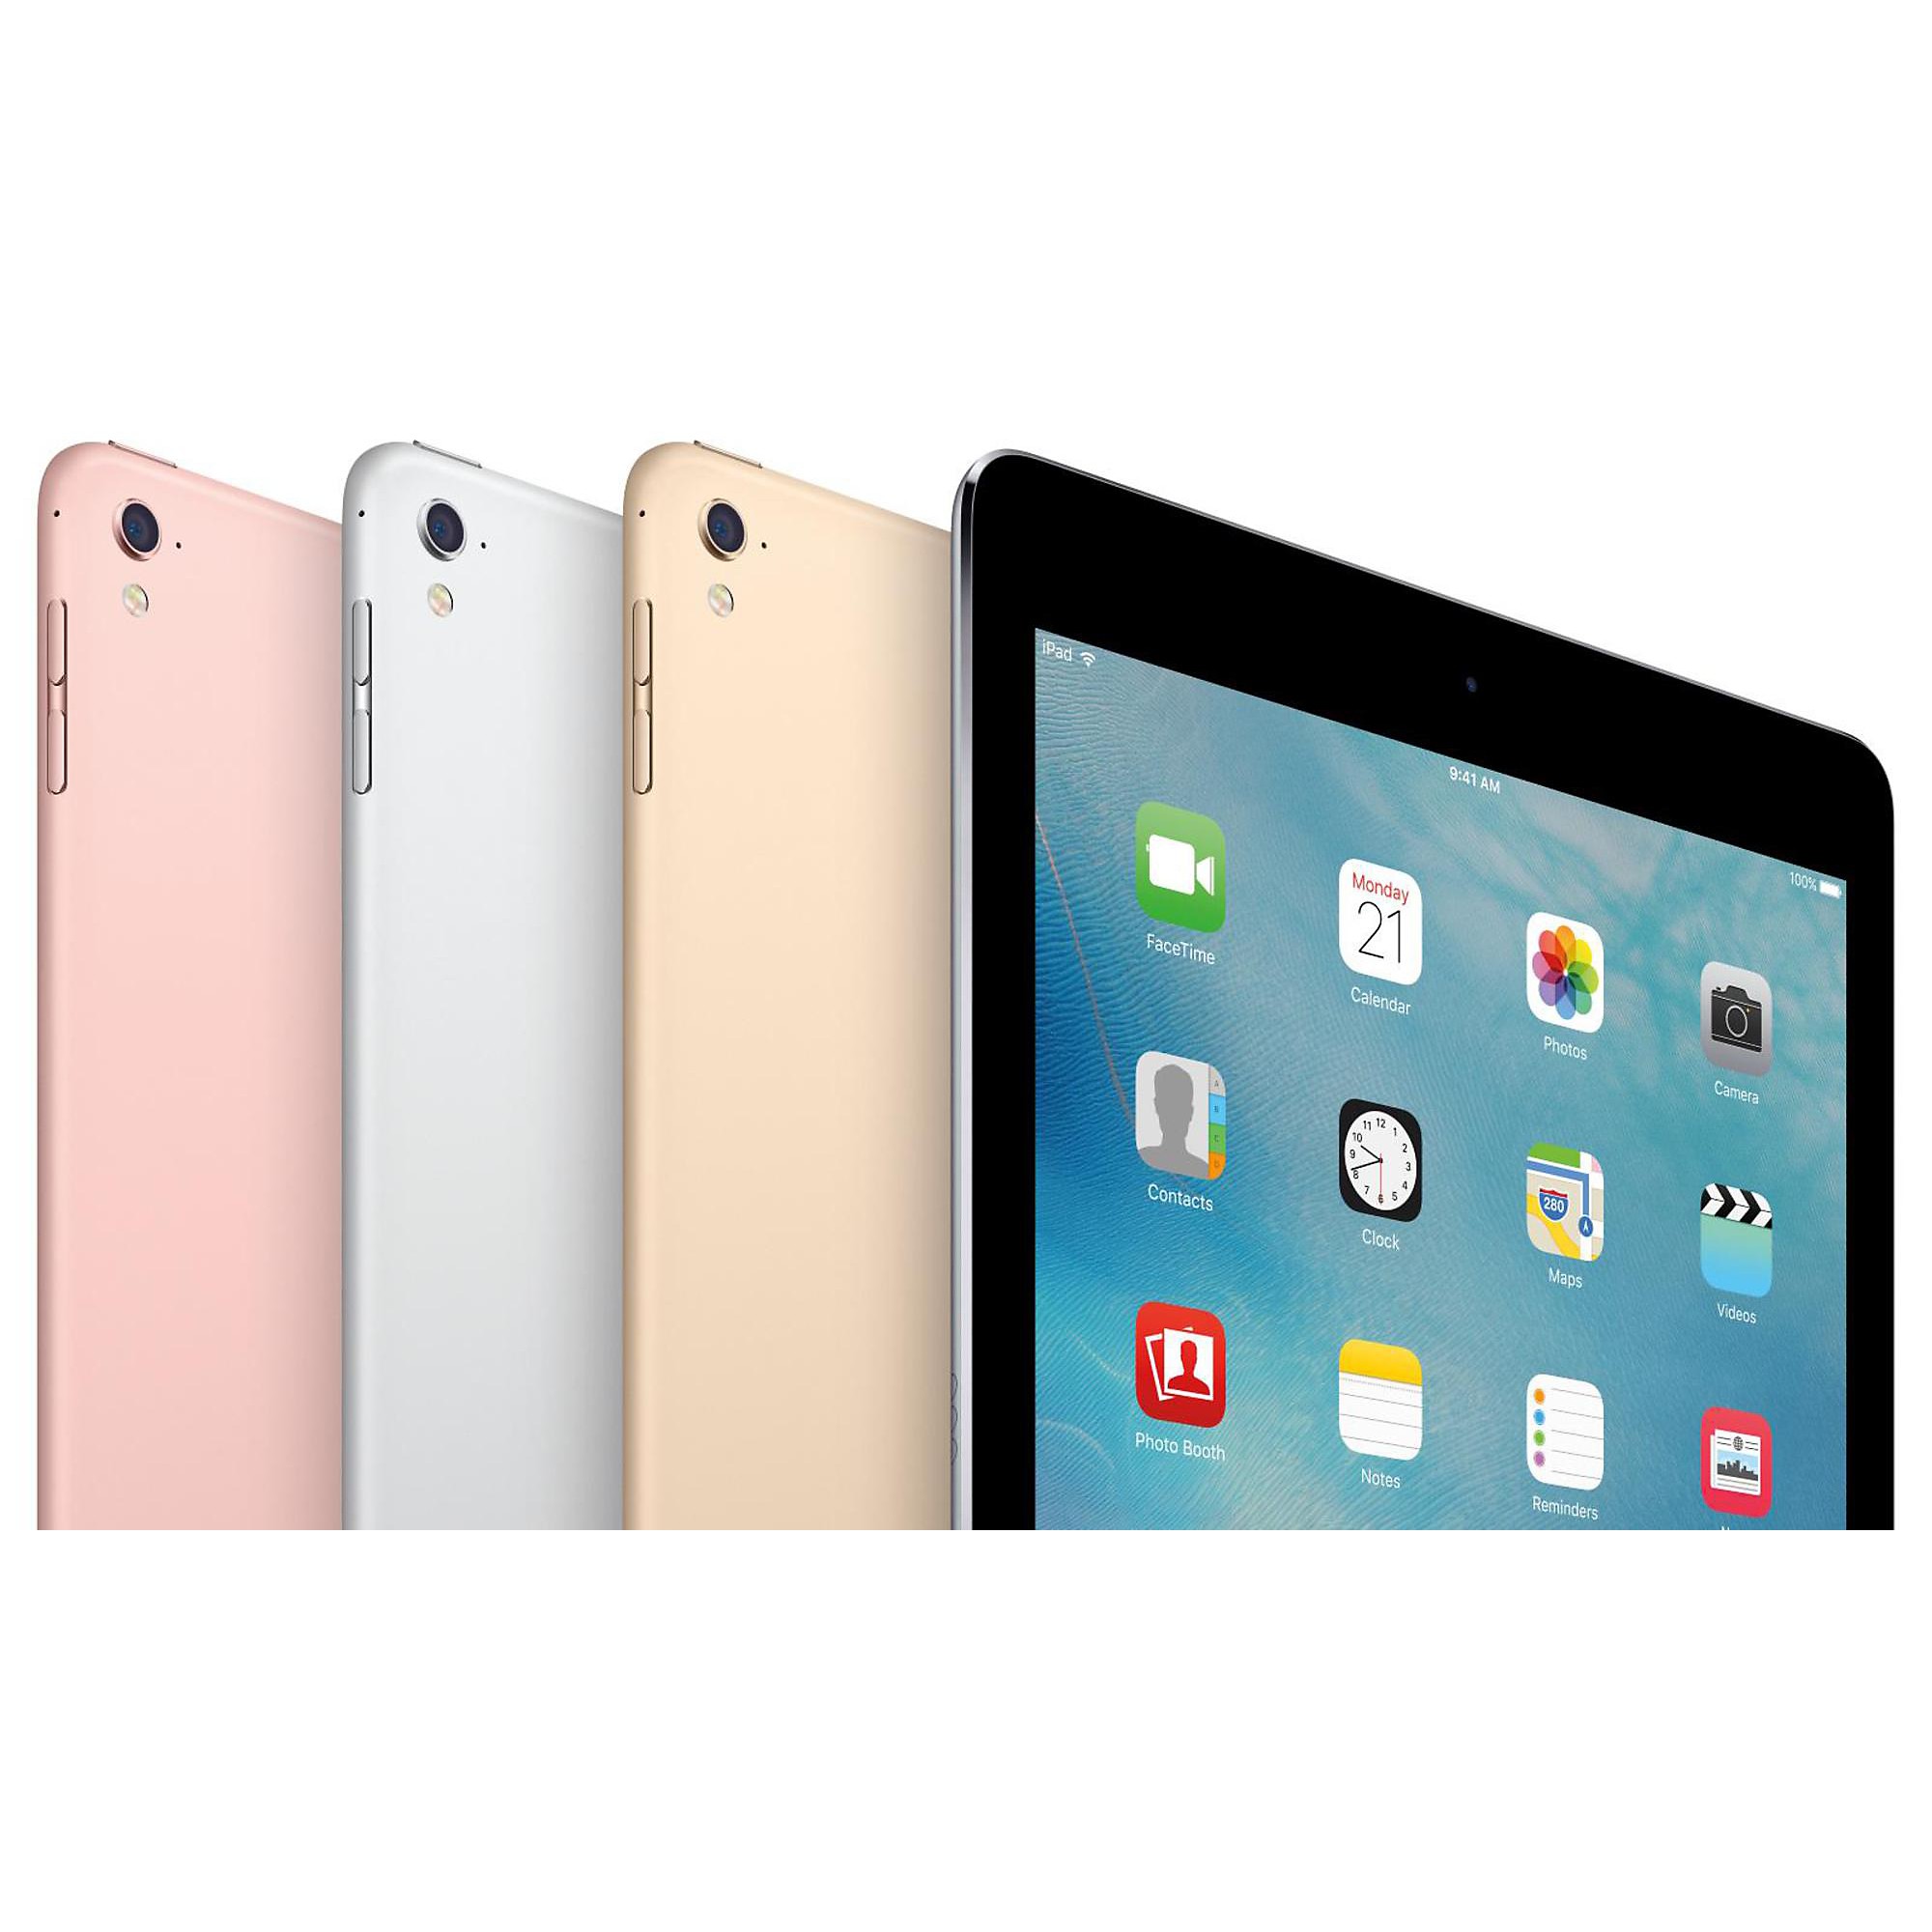 Apple iPad Pro 9.7" Wi-Fi 128GB Gold (MLMX2LL/A) 128 GB | Guitar